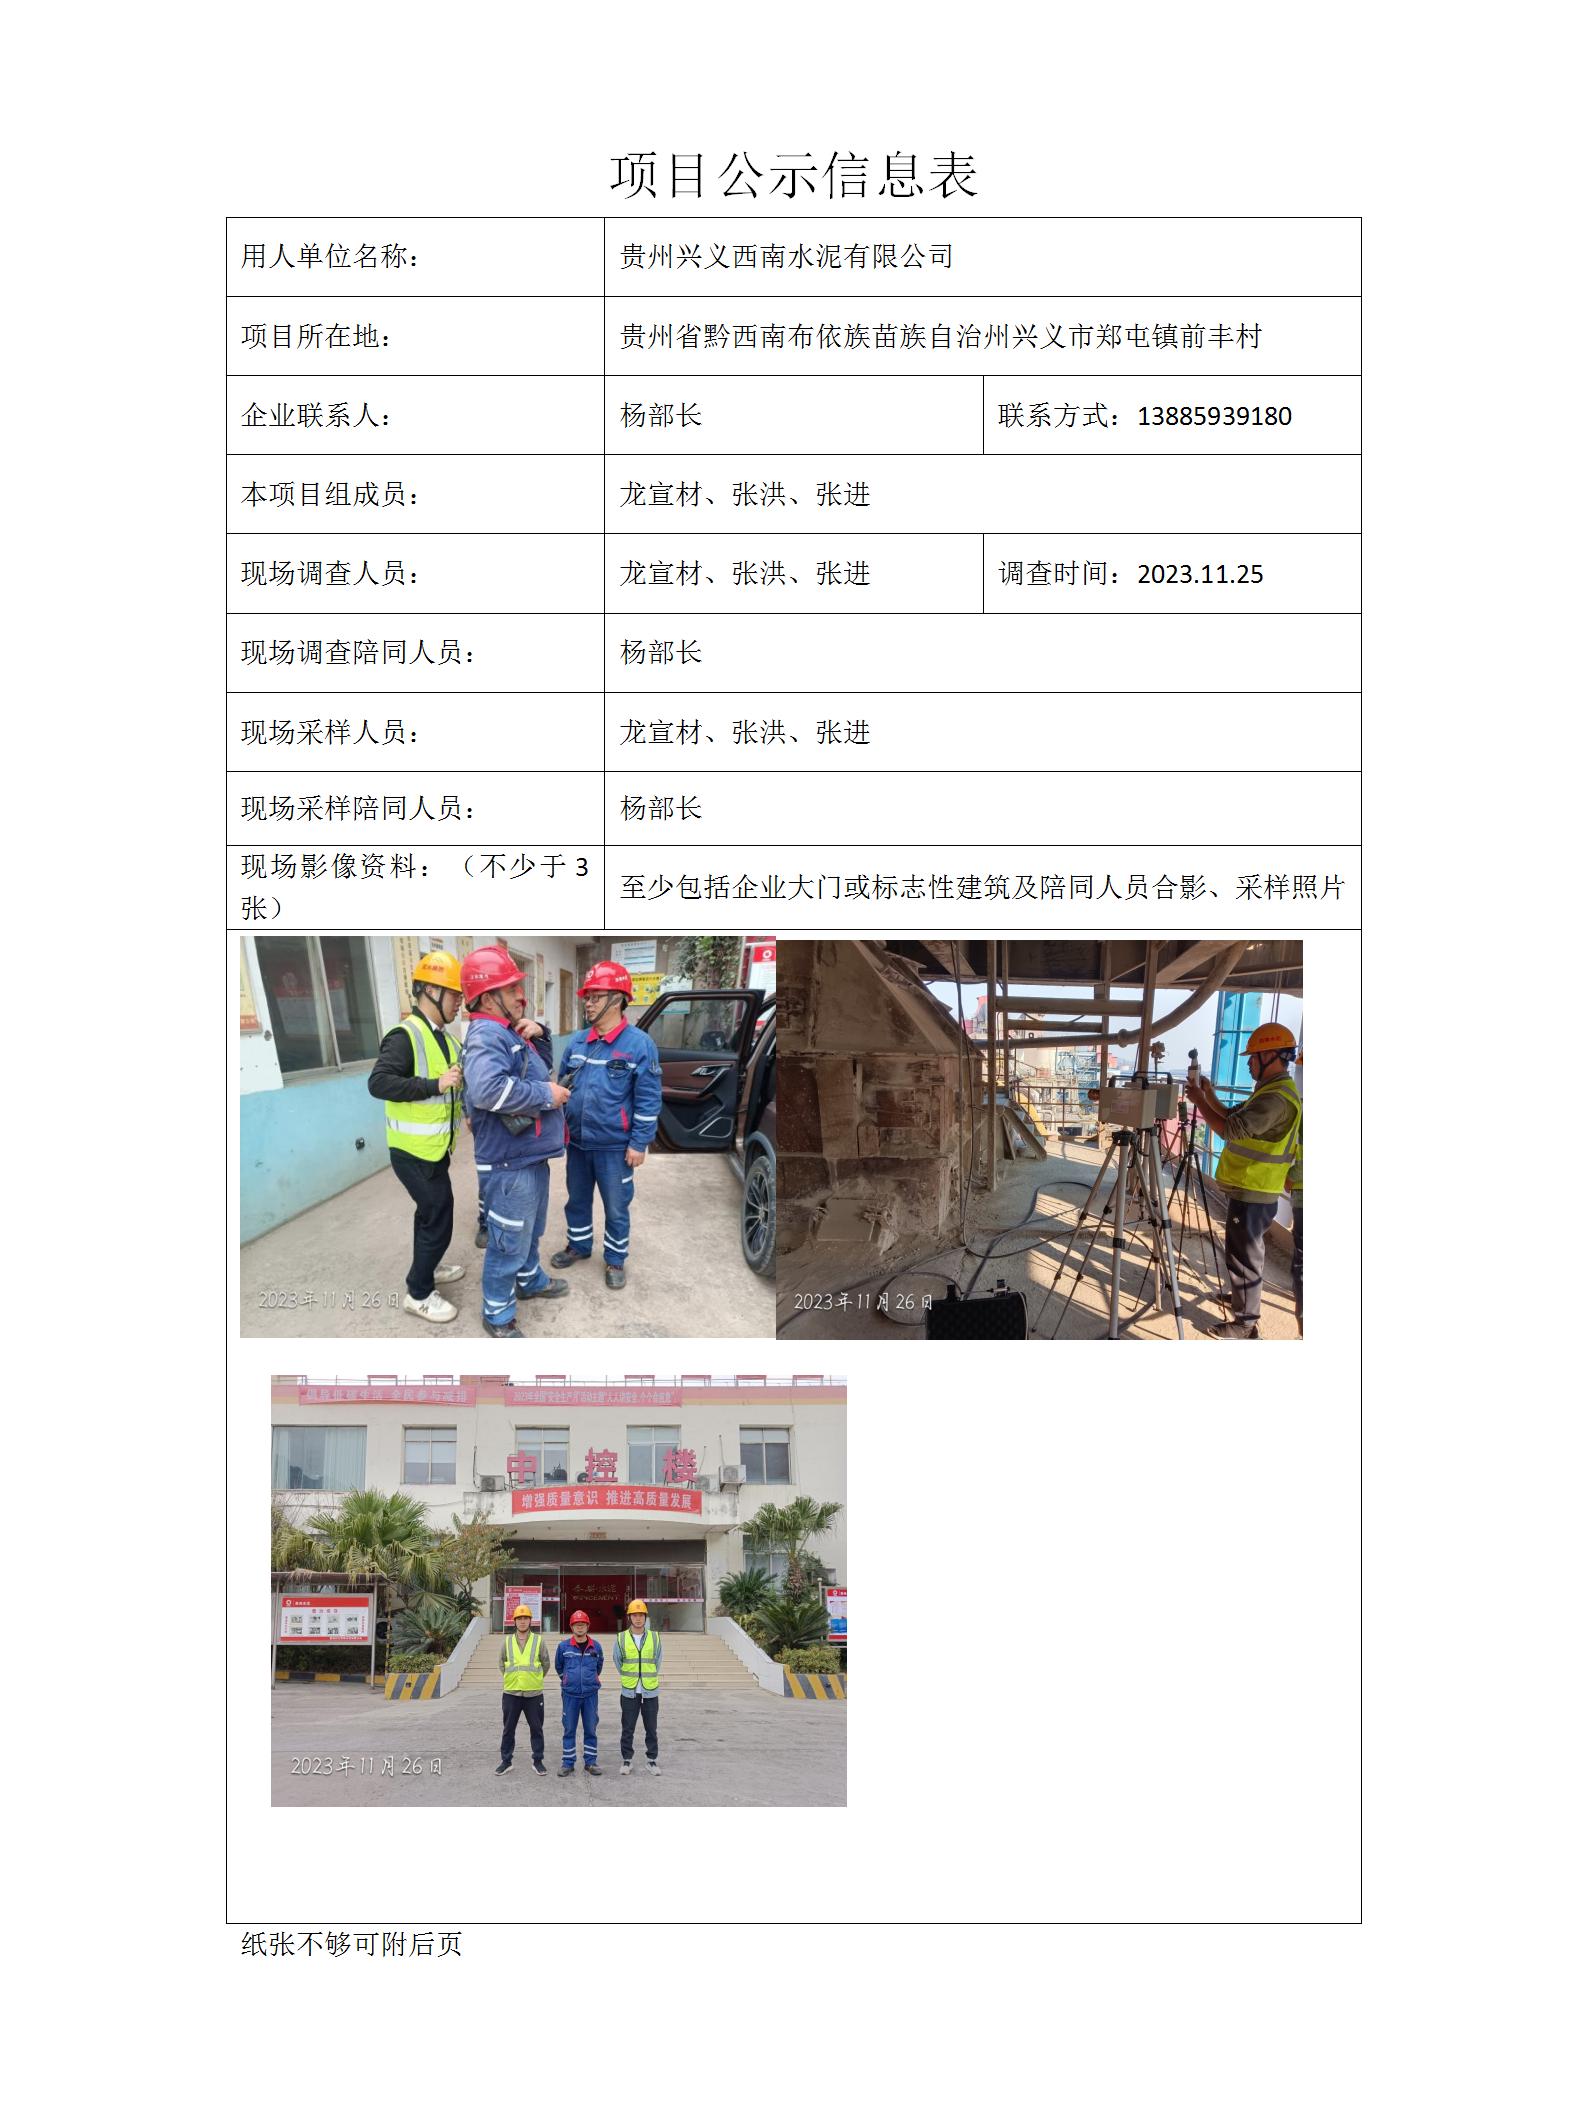 贵州兴义西南水泥有限公司项目公示信息表docx_01.jpg